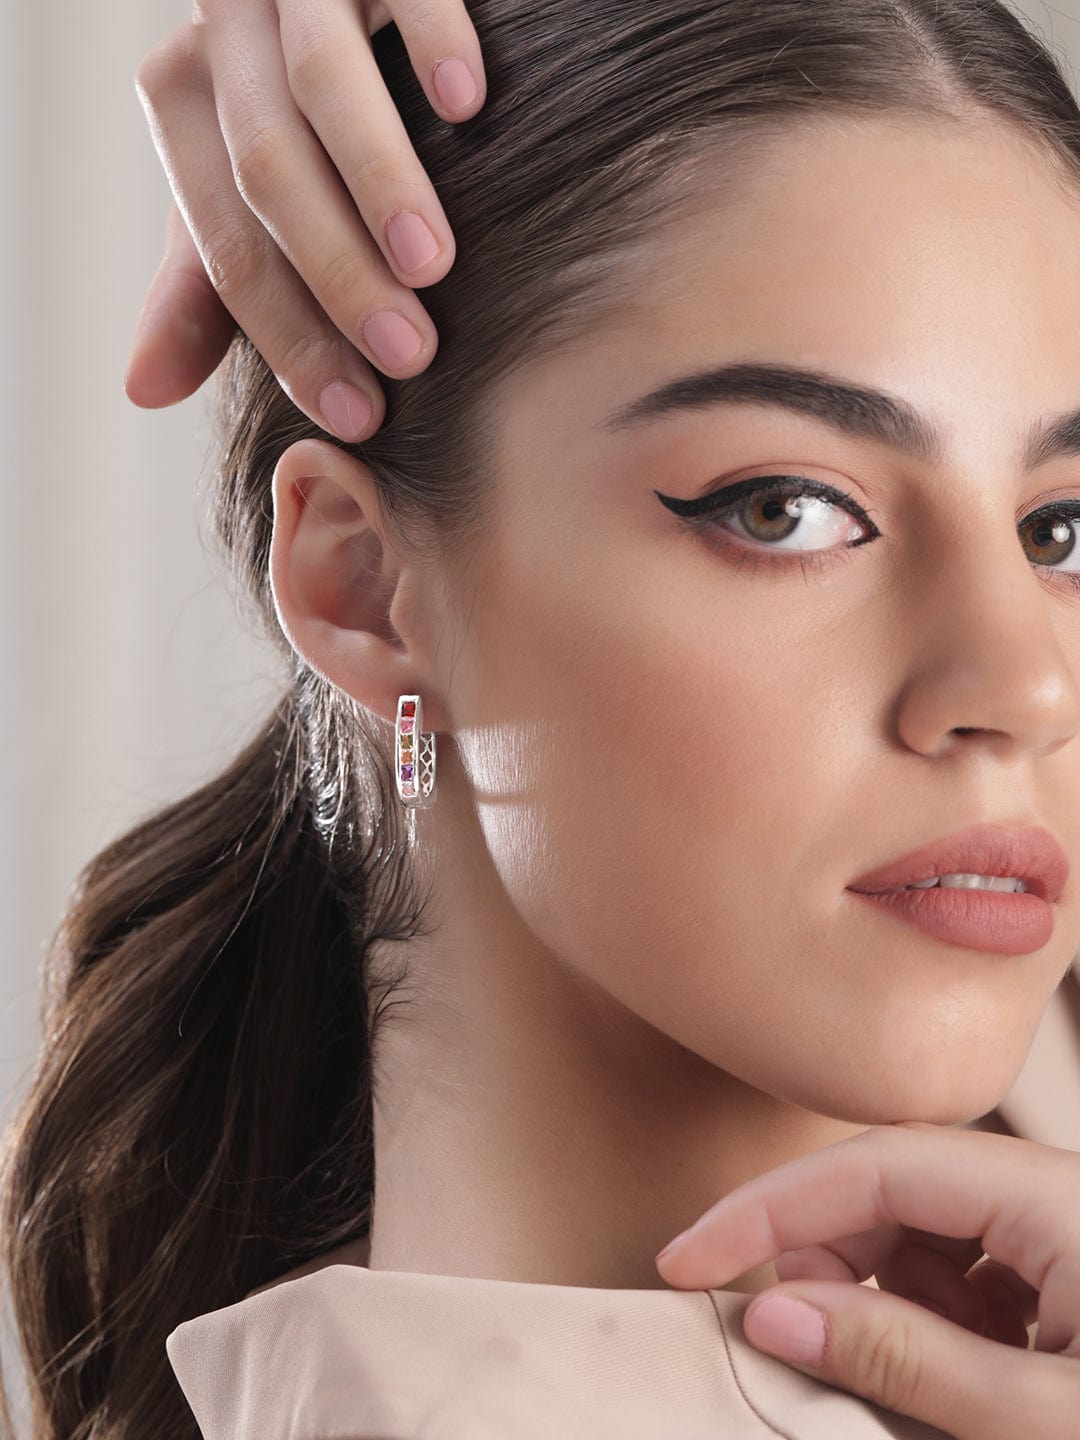 Rubans Voguish Silver-Toned Geometric Drop Earrings Earrings